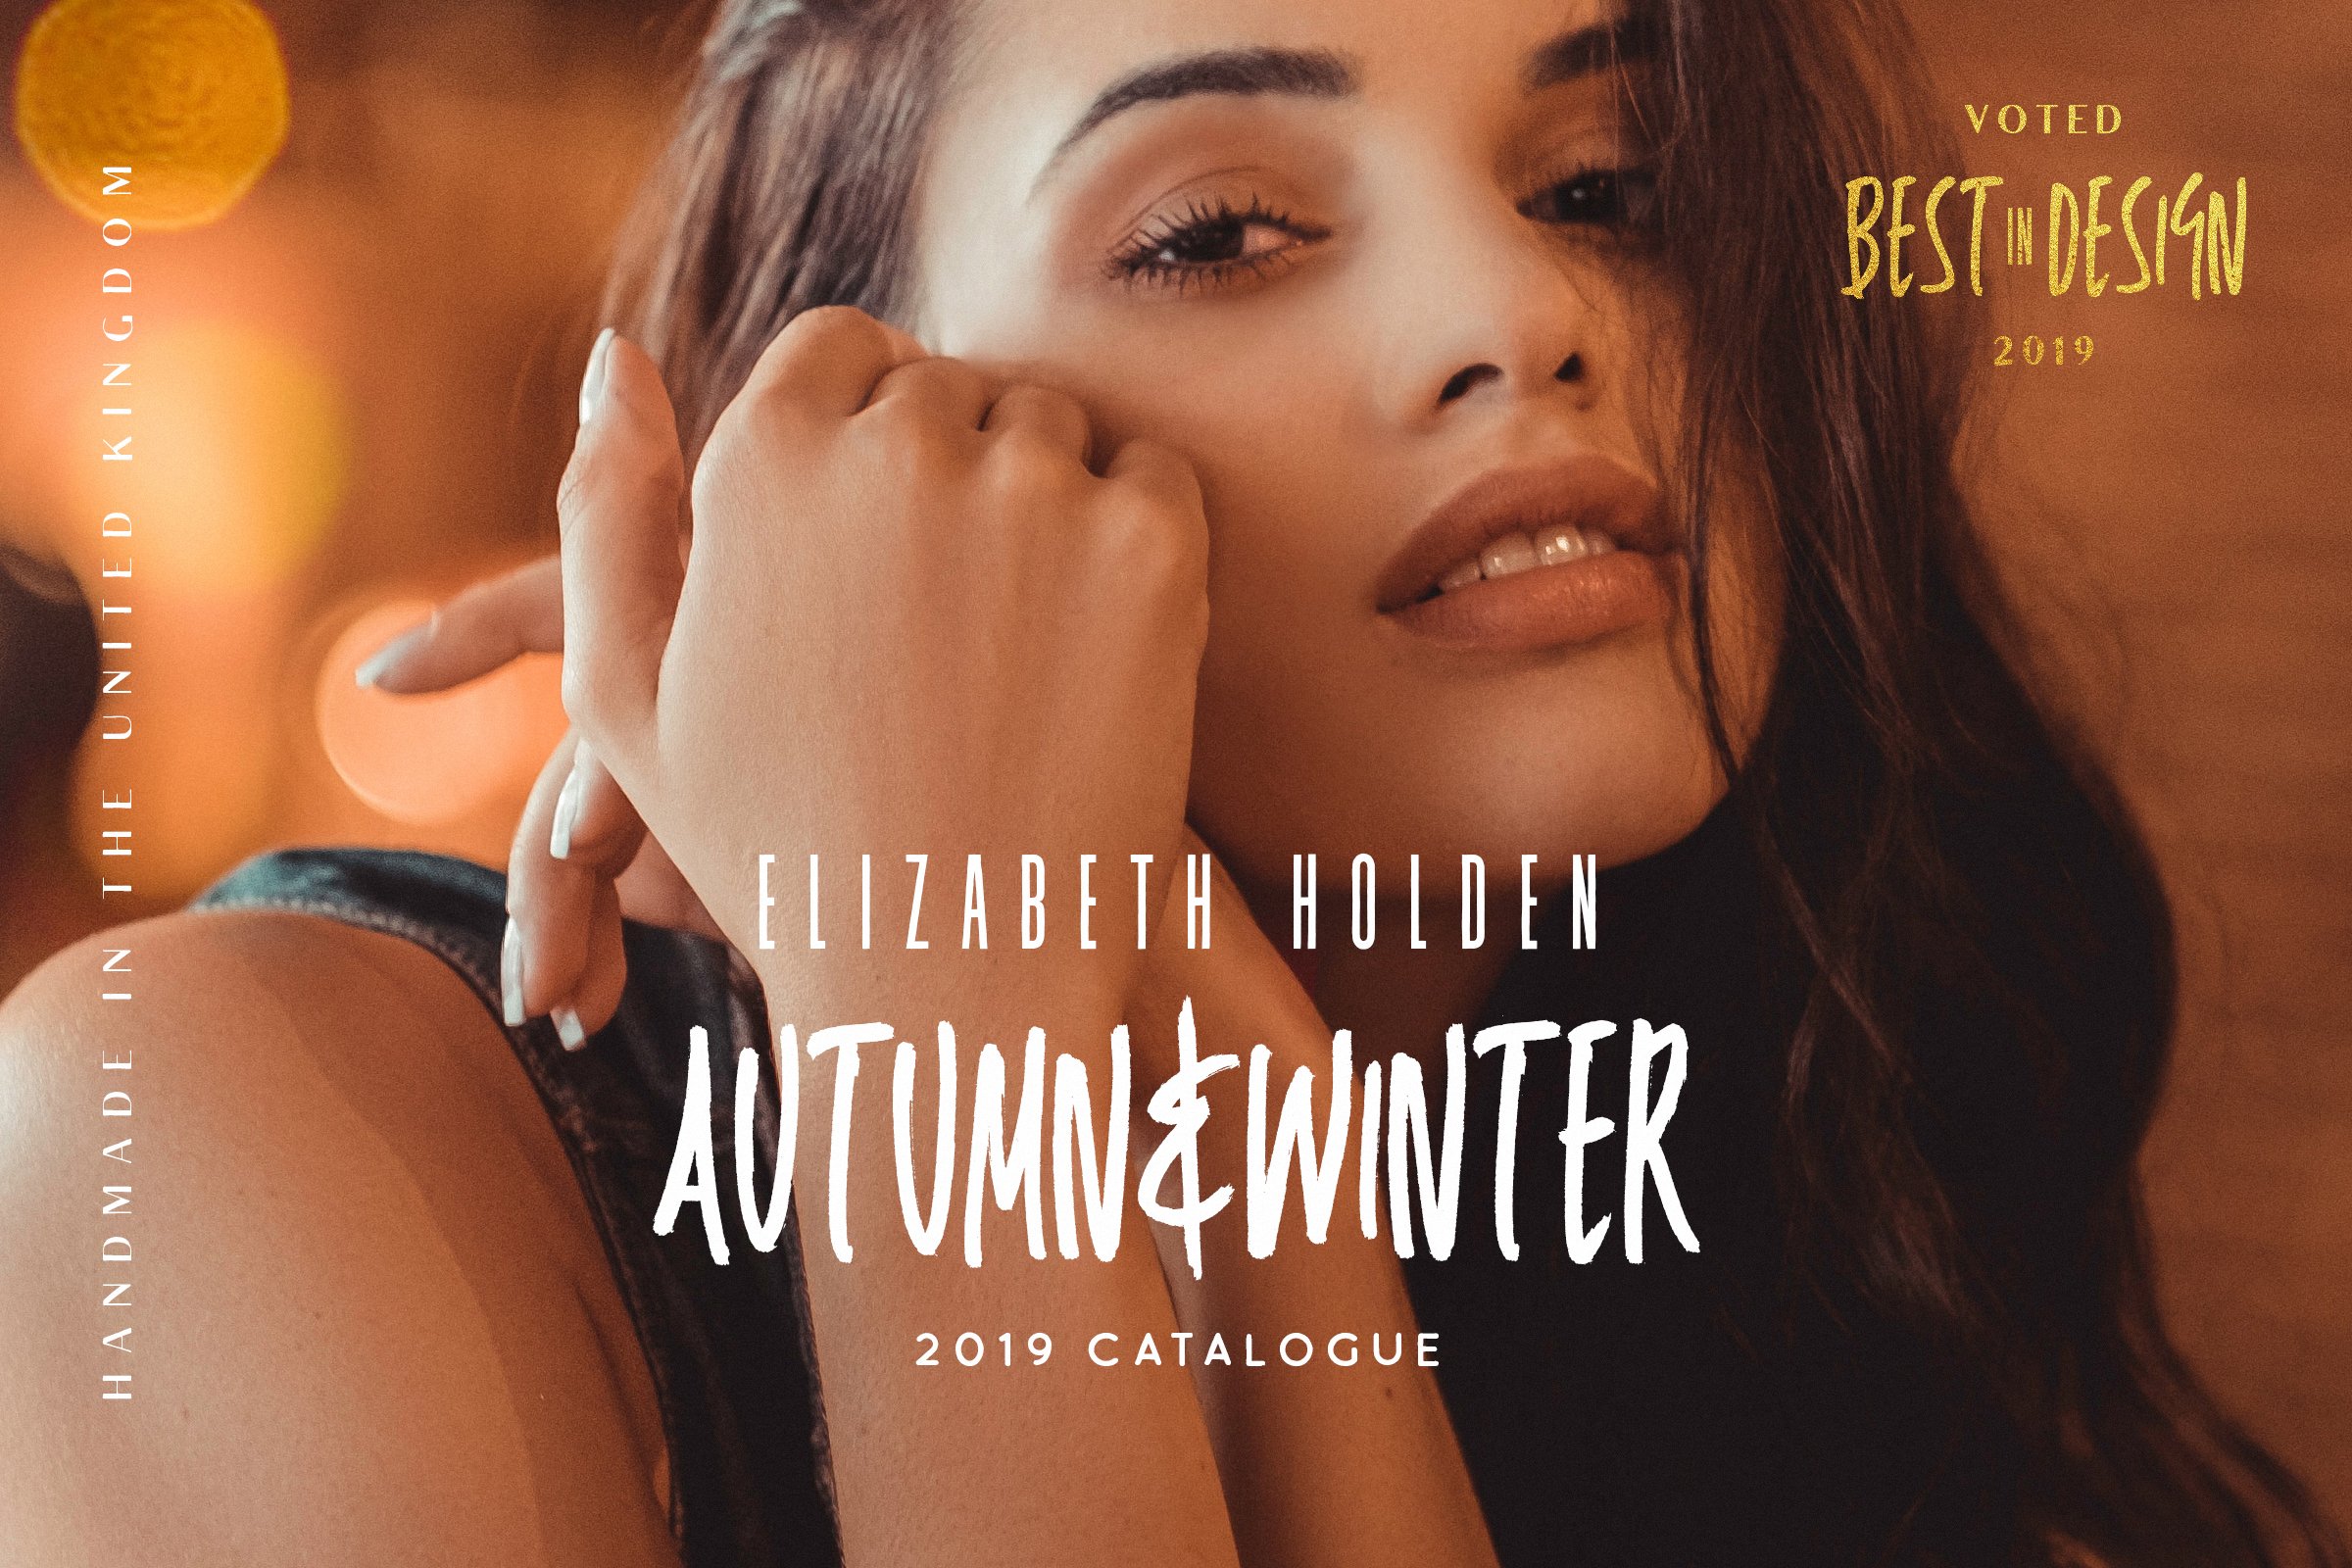 autumnwinter 609